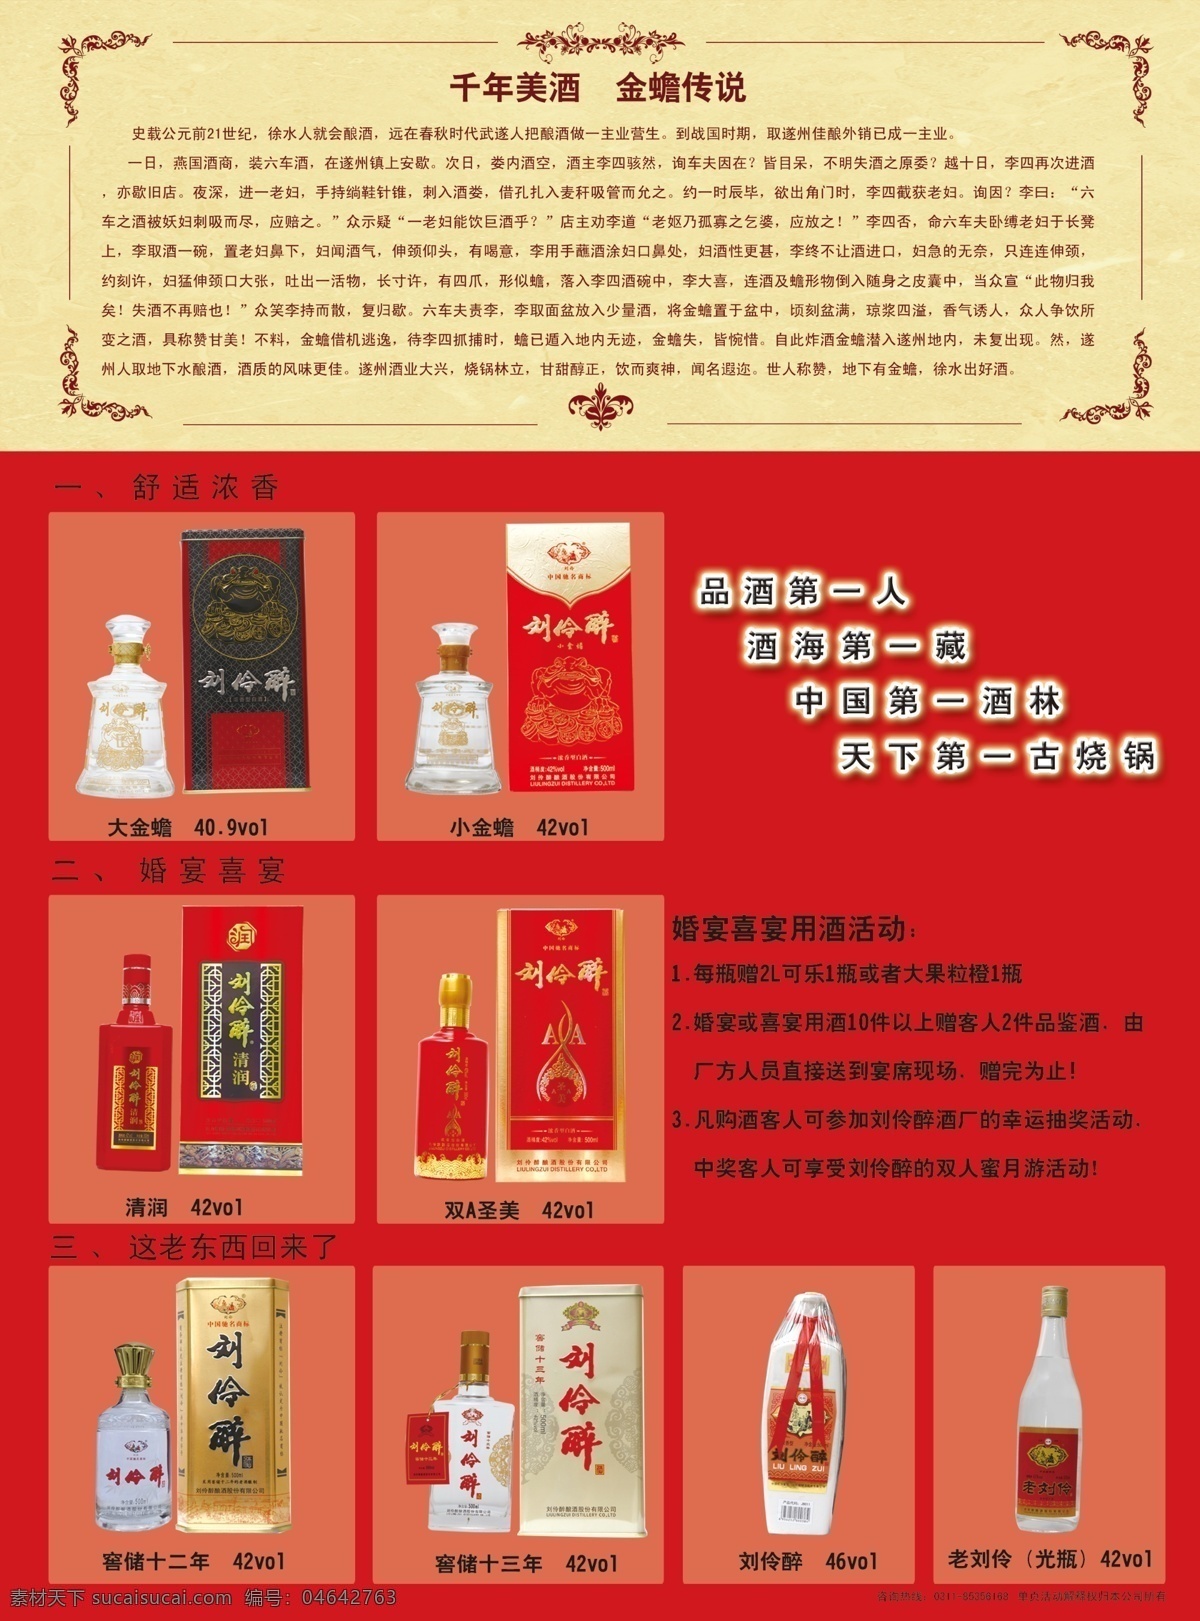 酒 活动 广告设计模板 源文件 中奖 模板下载 酒活动 刘伶醉 其他海报设计